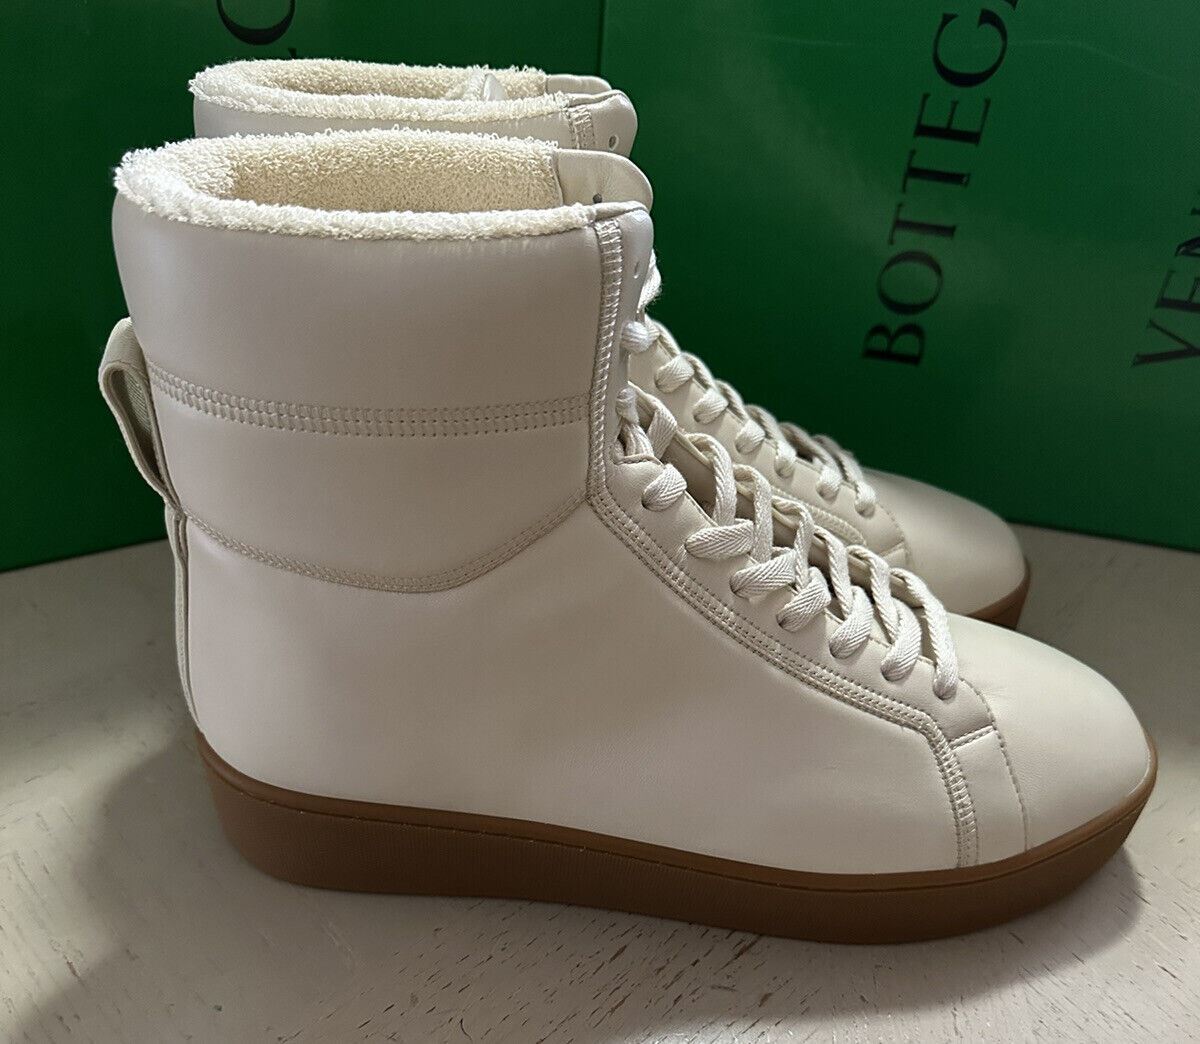 NIB $950 Bottega Veneta Мужские кожаные высокие кроссовки белые 8 US/41 EU